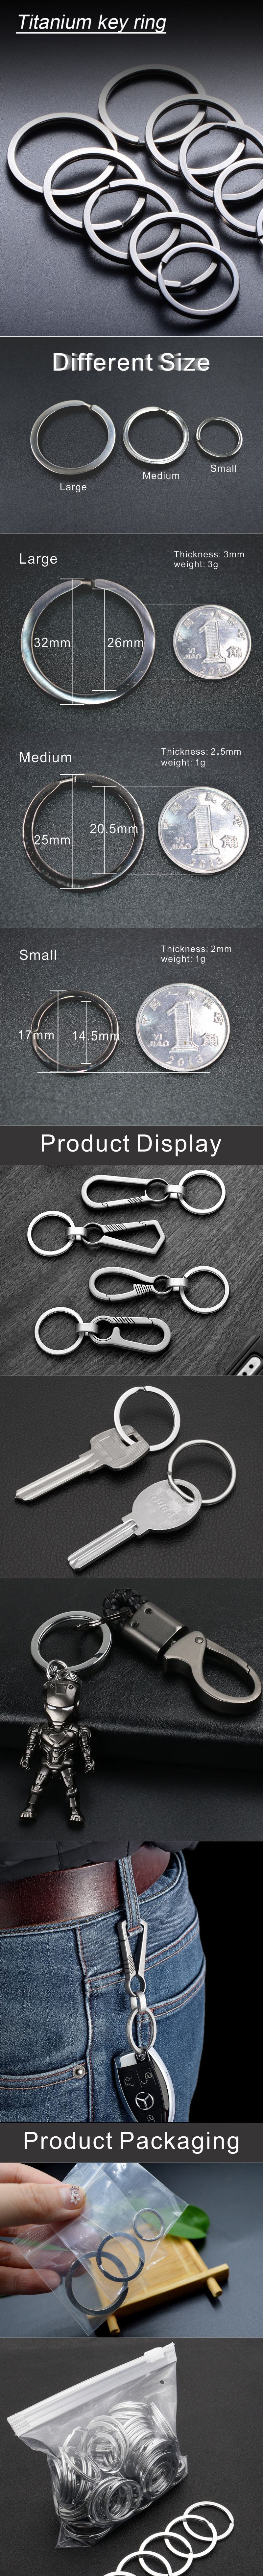 titanium key ring 